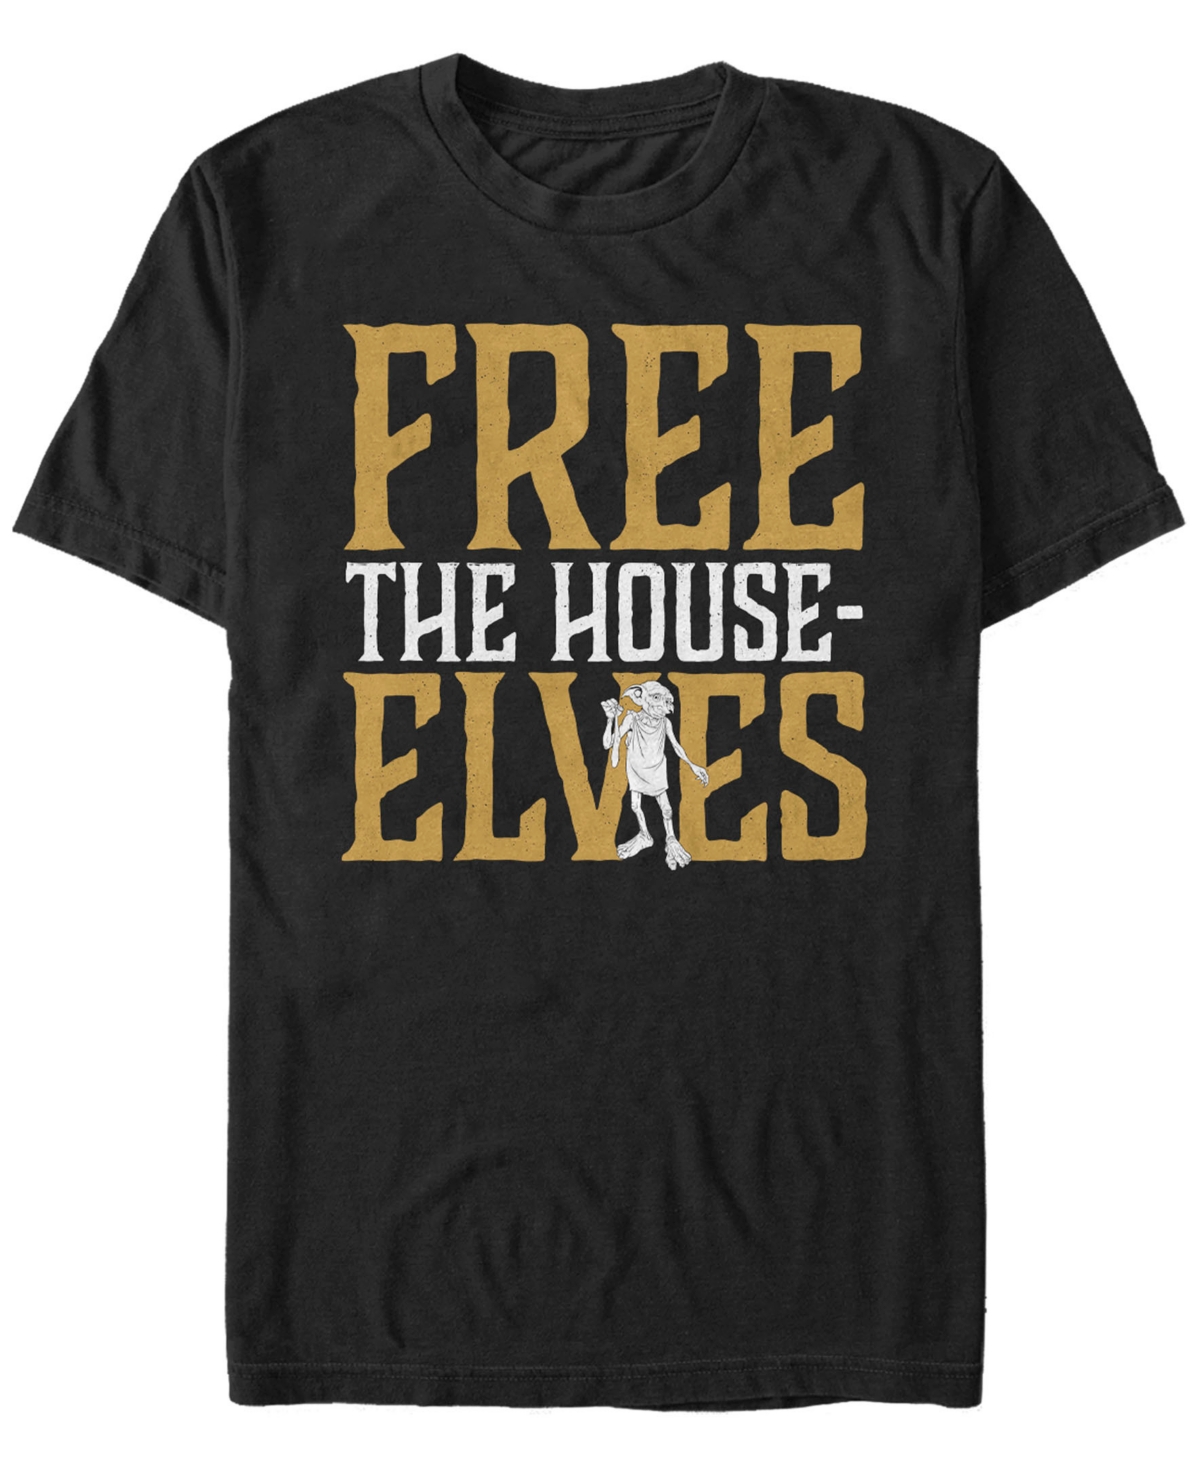 Harry Potter Men's Dobby Free The House-Elves Short Sleeve T-Shirt - Black